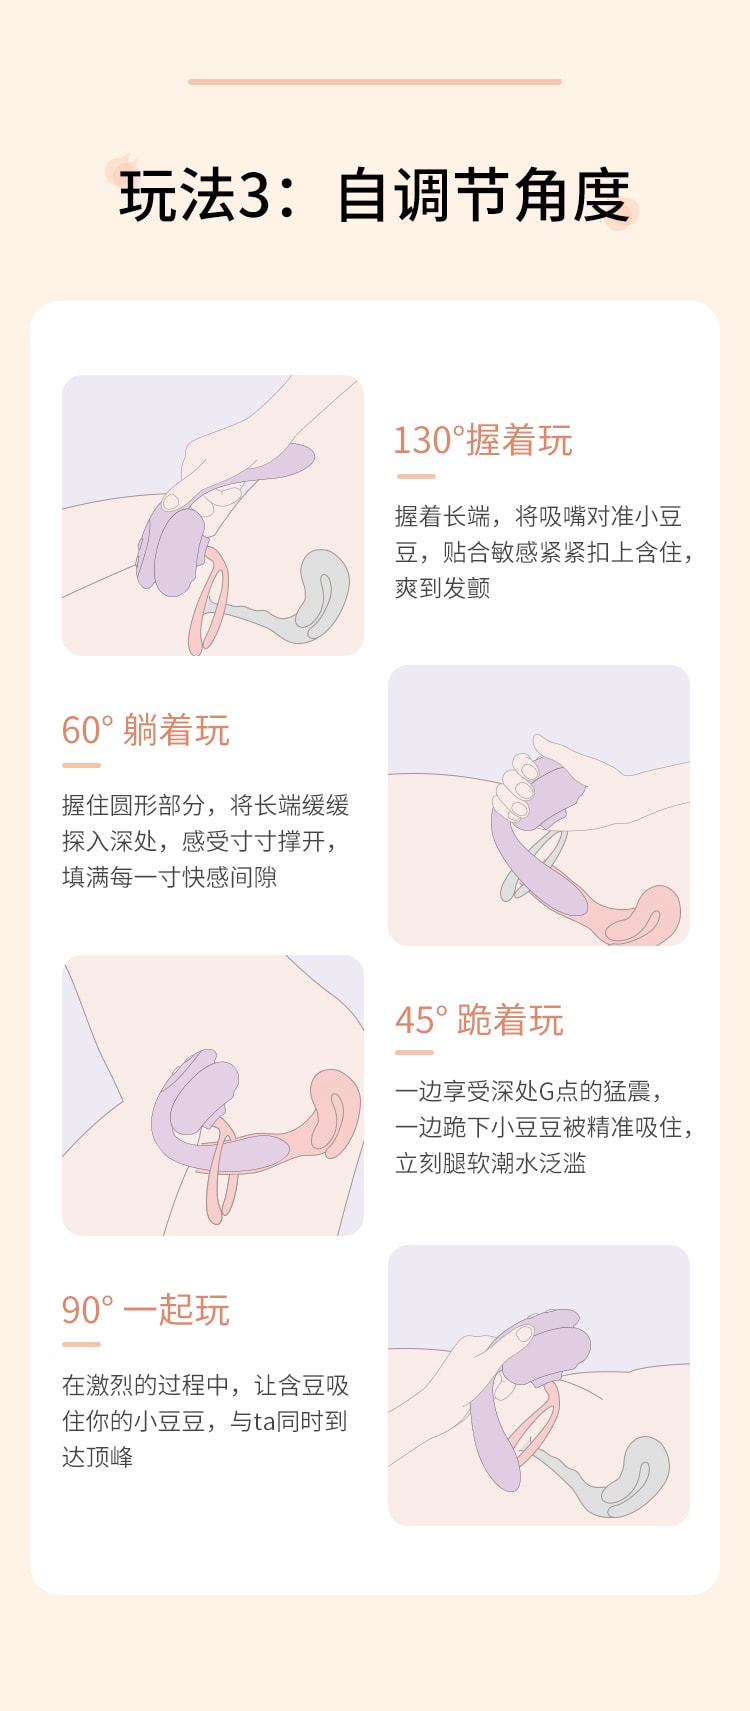 中國 Mesanel享要含豆振動震動棒女性成人用品自慰器女情趣玩具秒潮高潮性用具 豆沙紫 1件